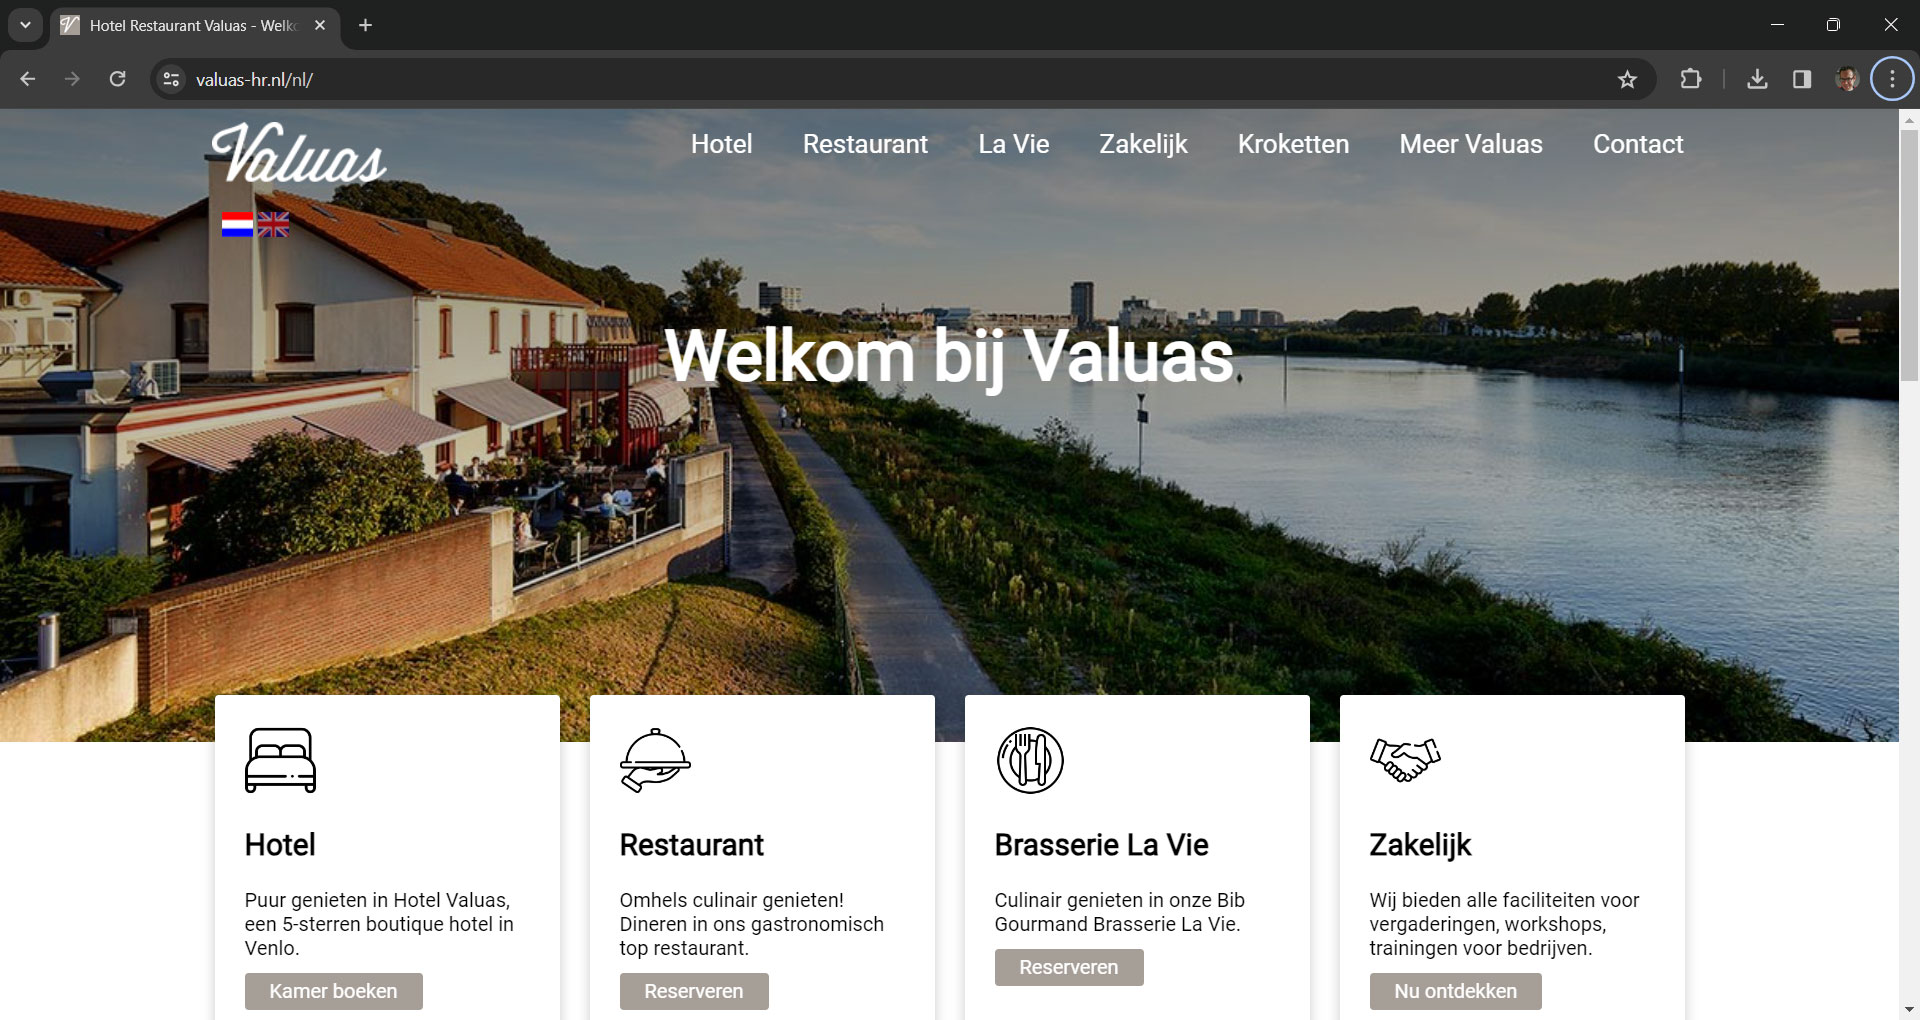 CLIM.nl portfolio: Hotel Restaurant Valuas